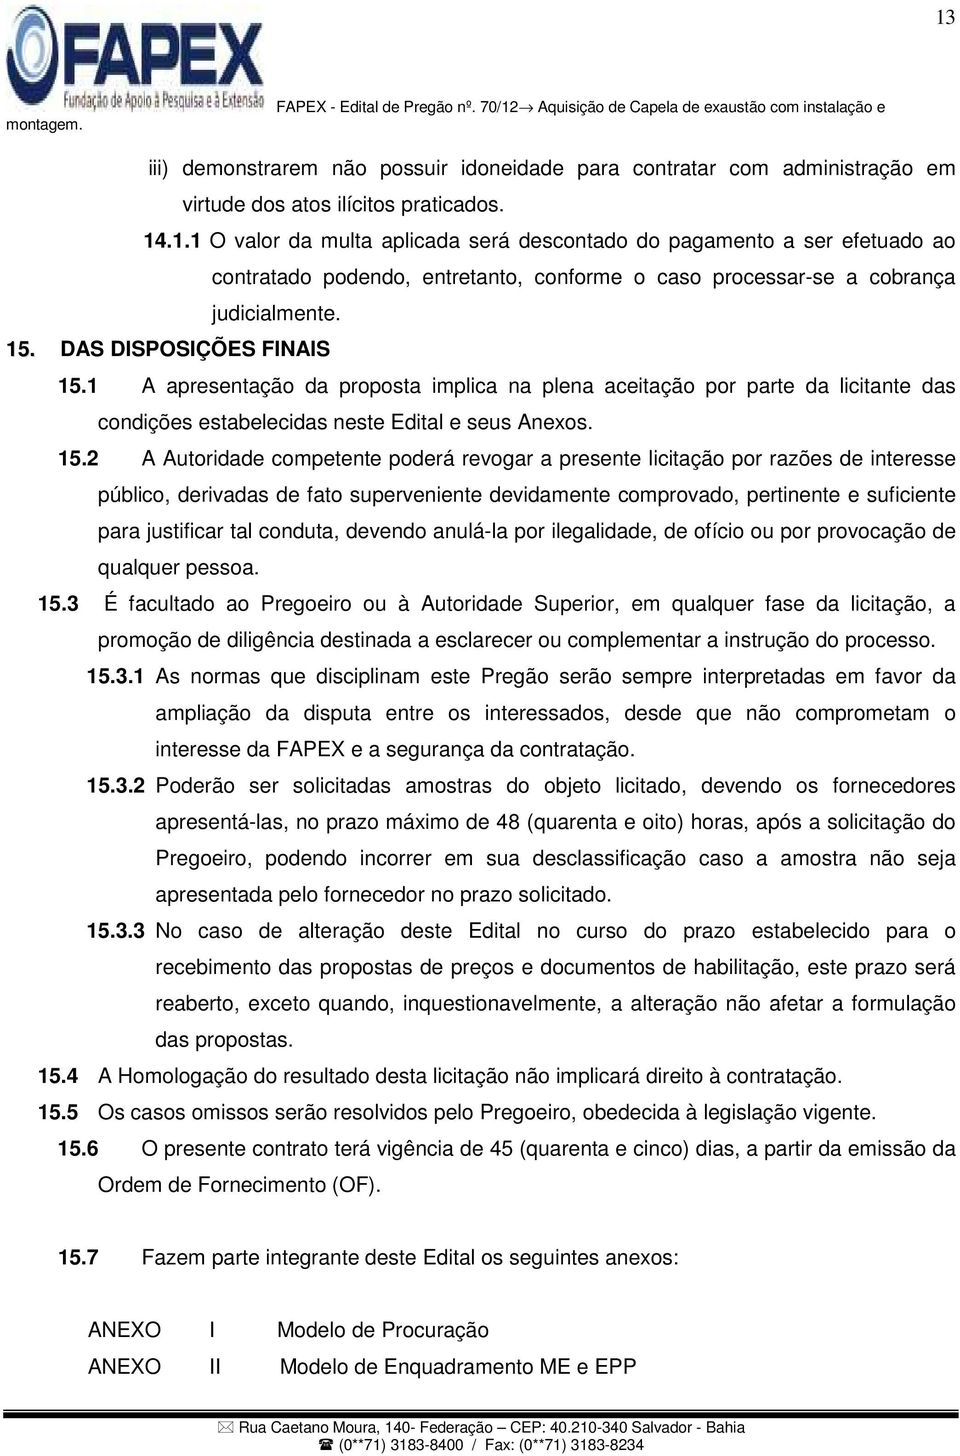 1 A apresentação da proposta implica na plena aceitação por parte da licitante das condições estabelecidas neste Edital e seus Anexos. 15.